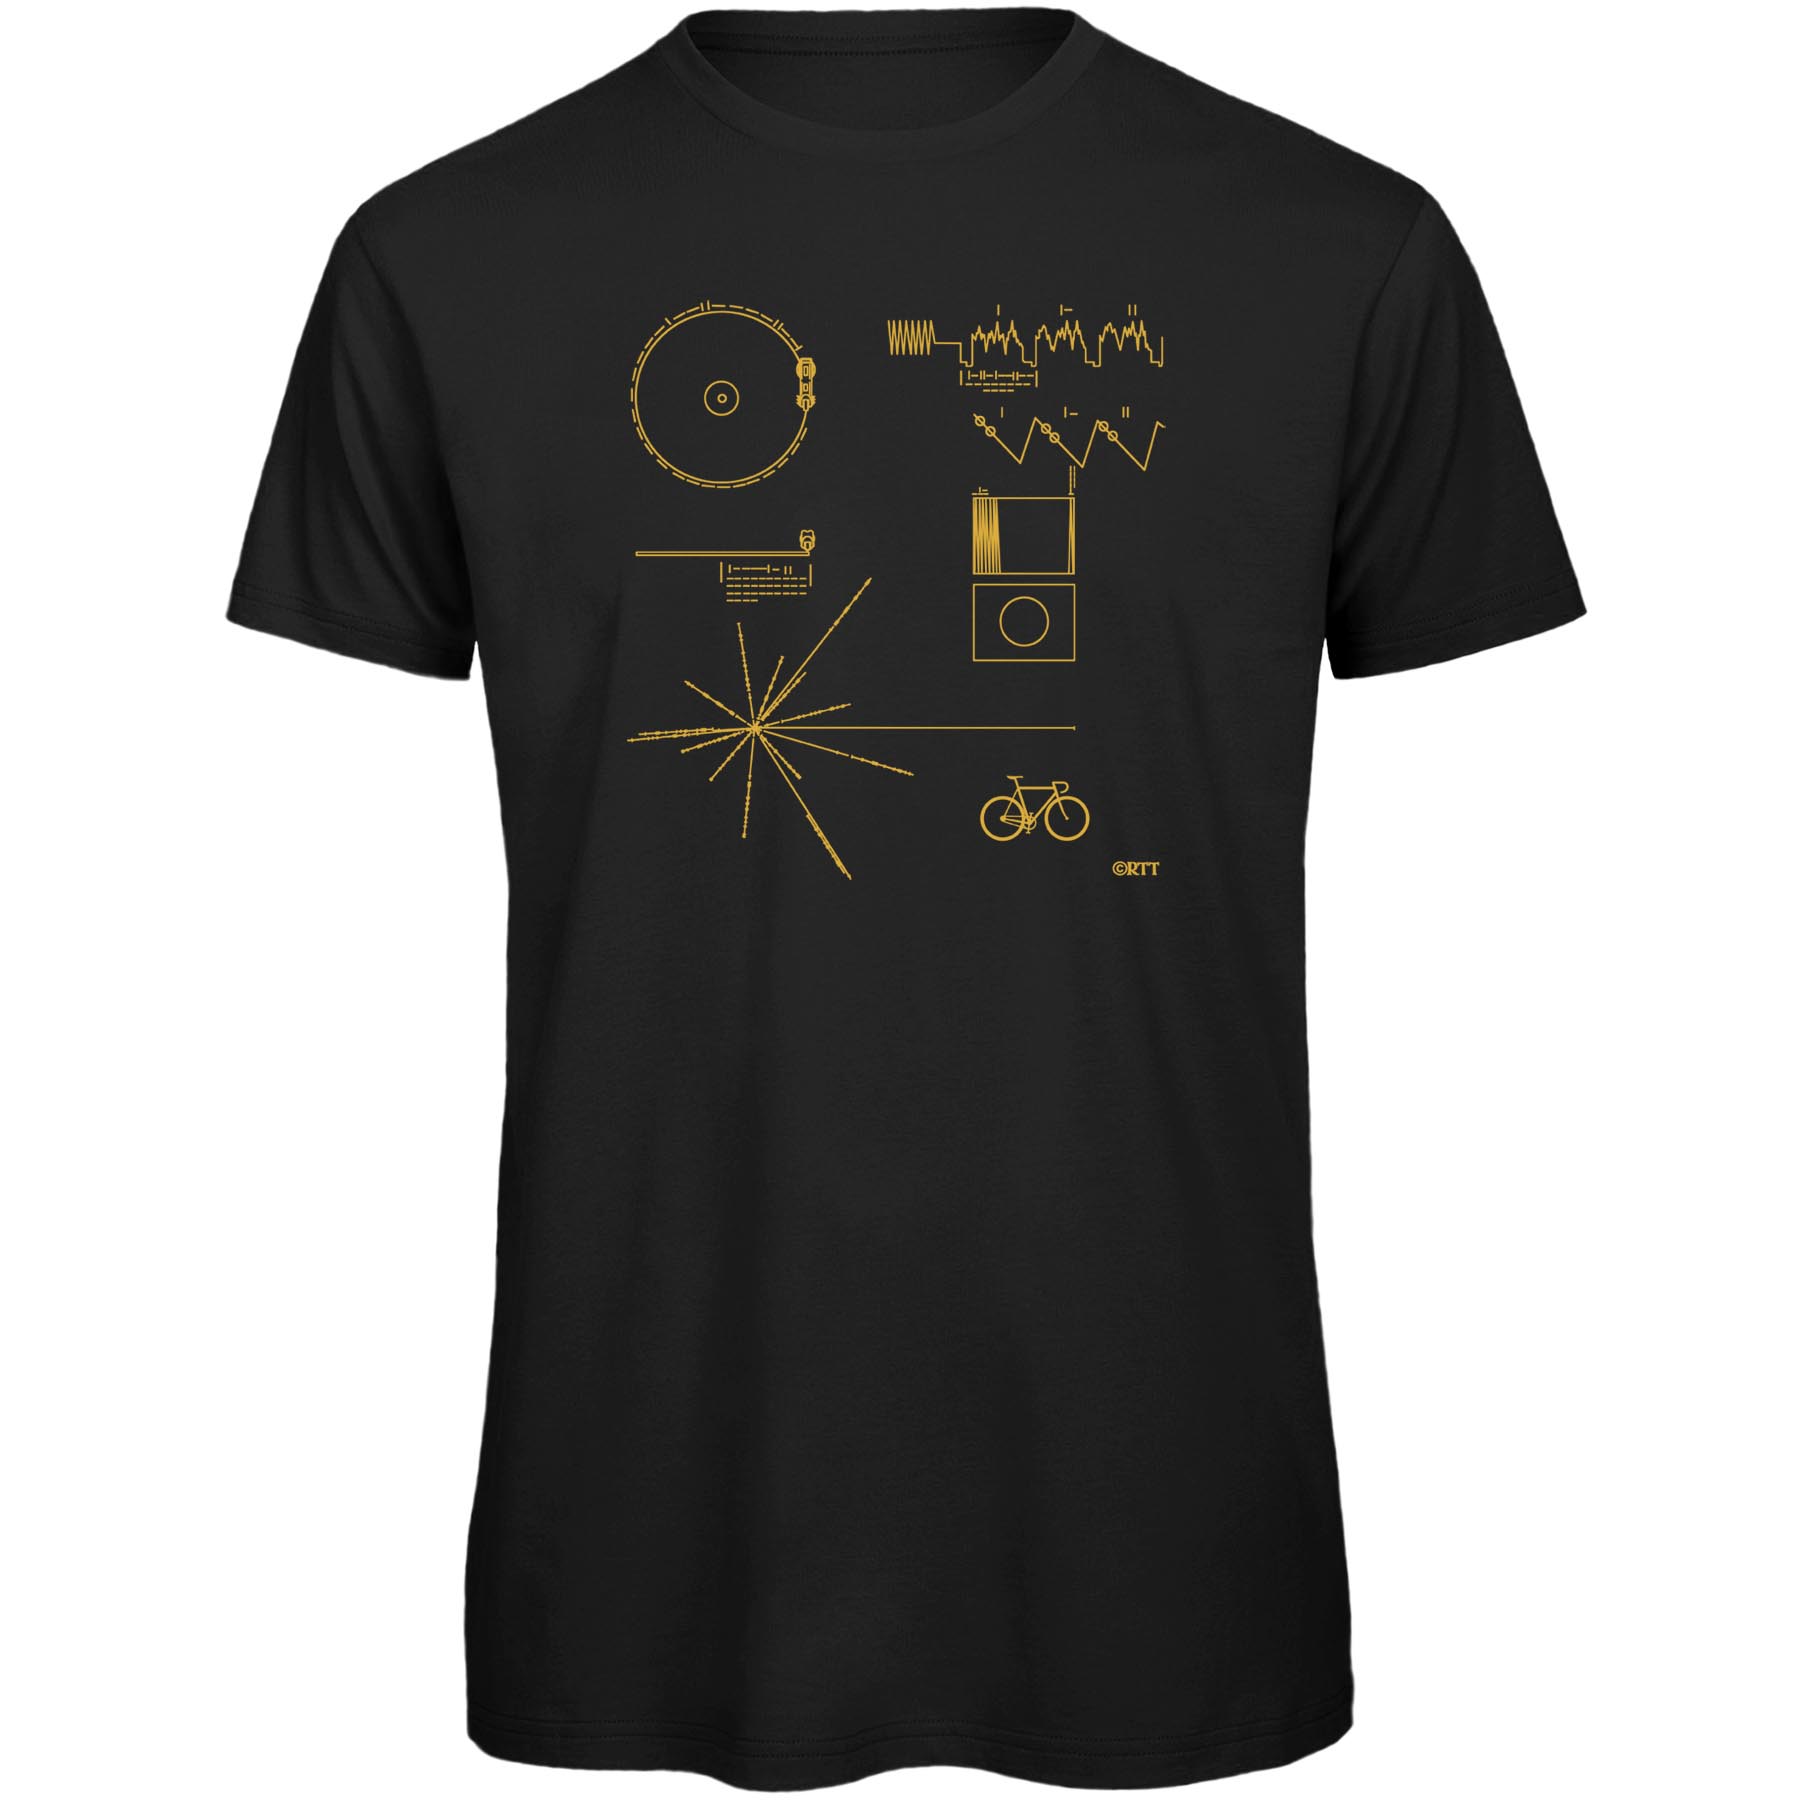 Produktbild von RTTshirts Voyager Fahrrad T-Shirt Herren - schwarz